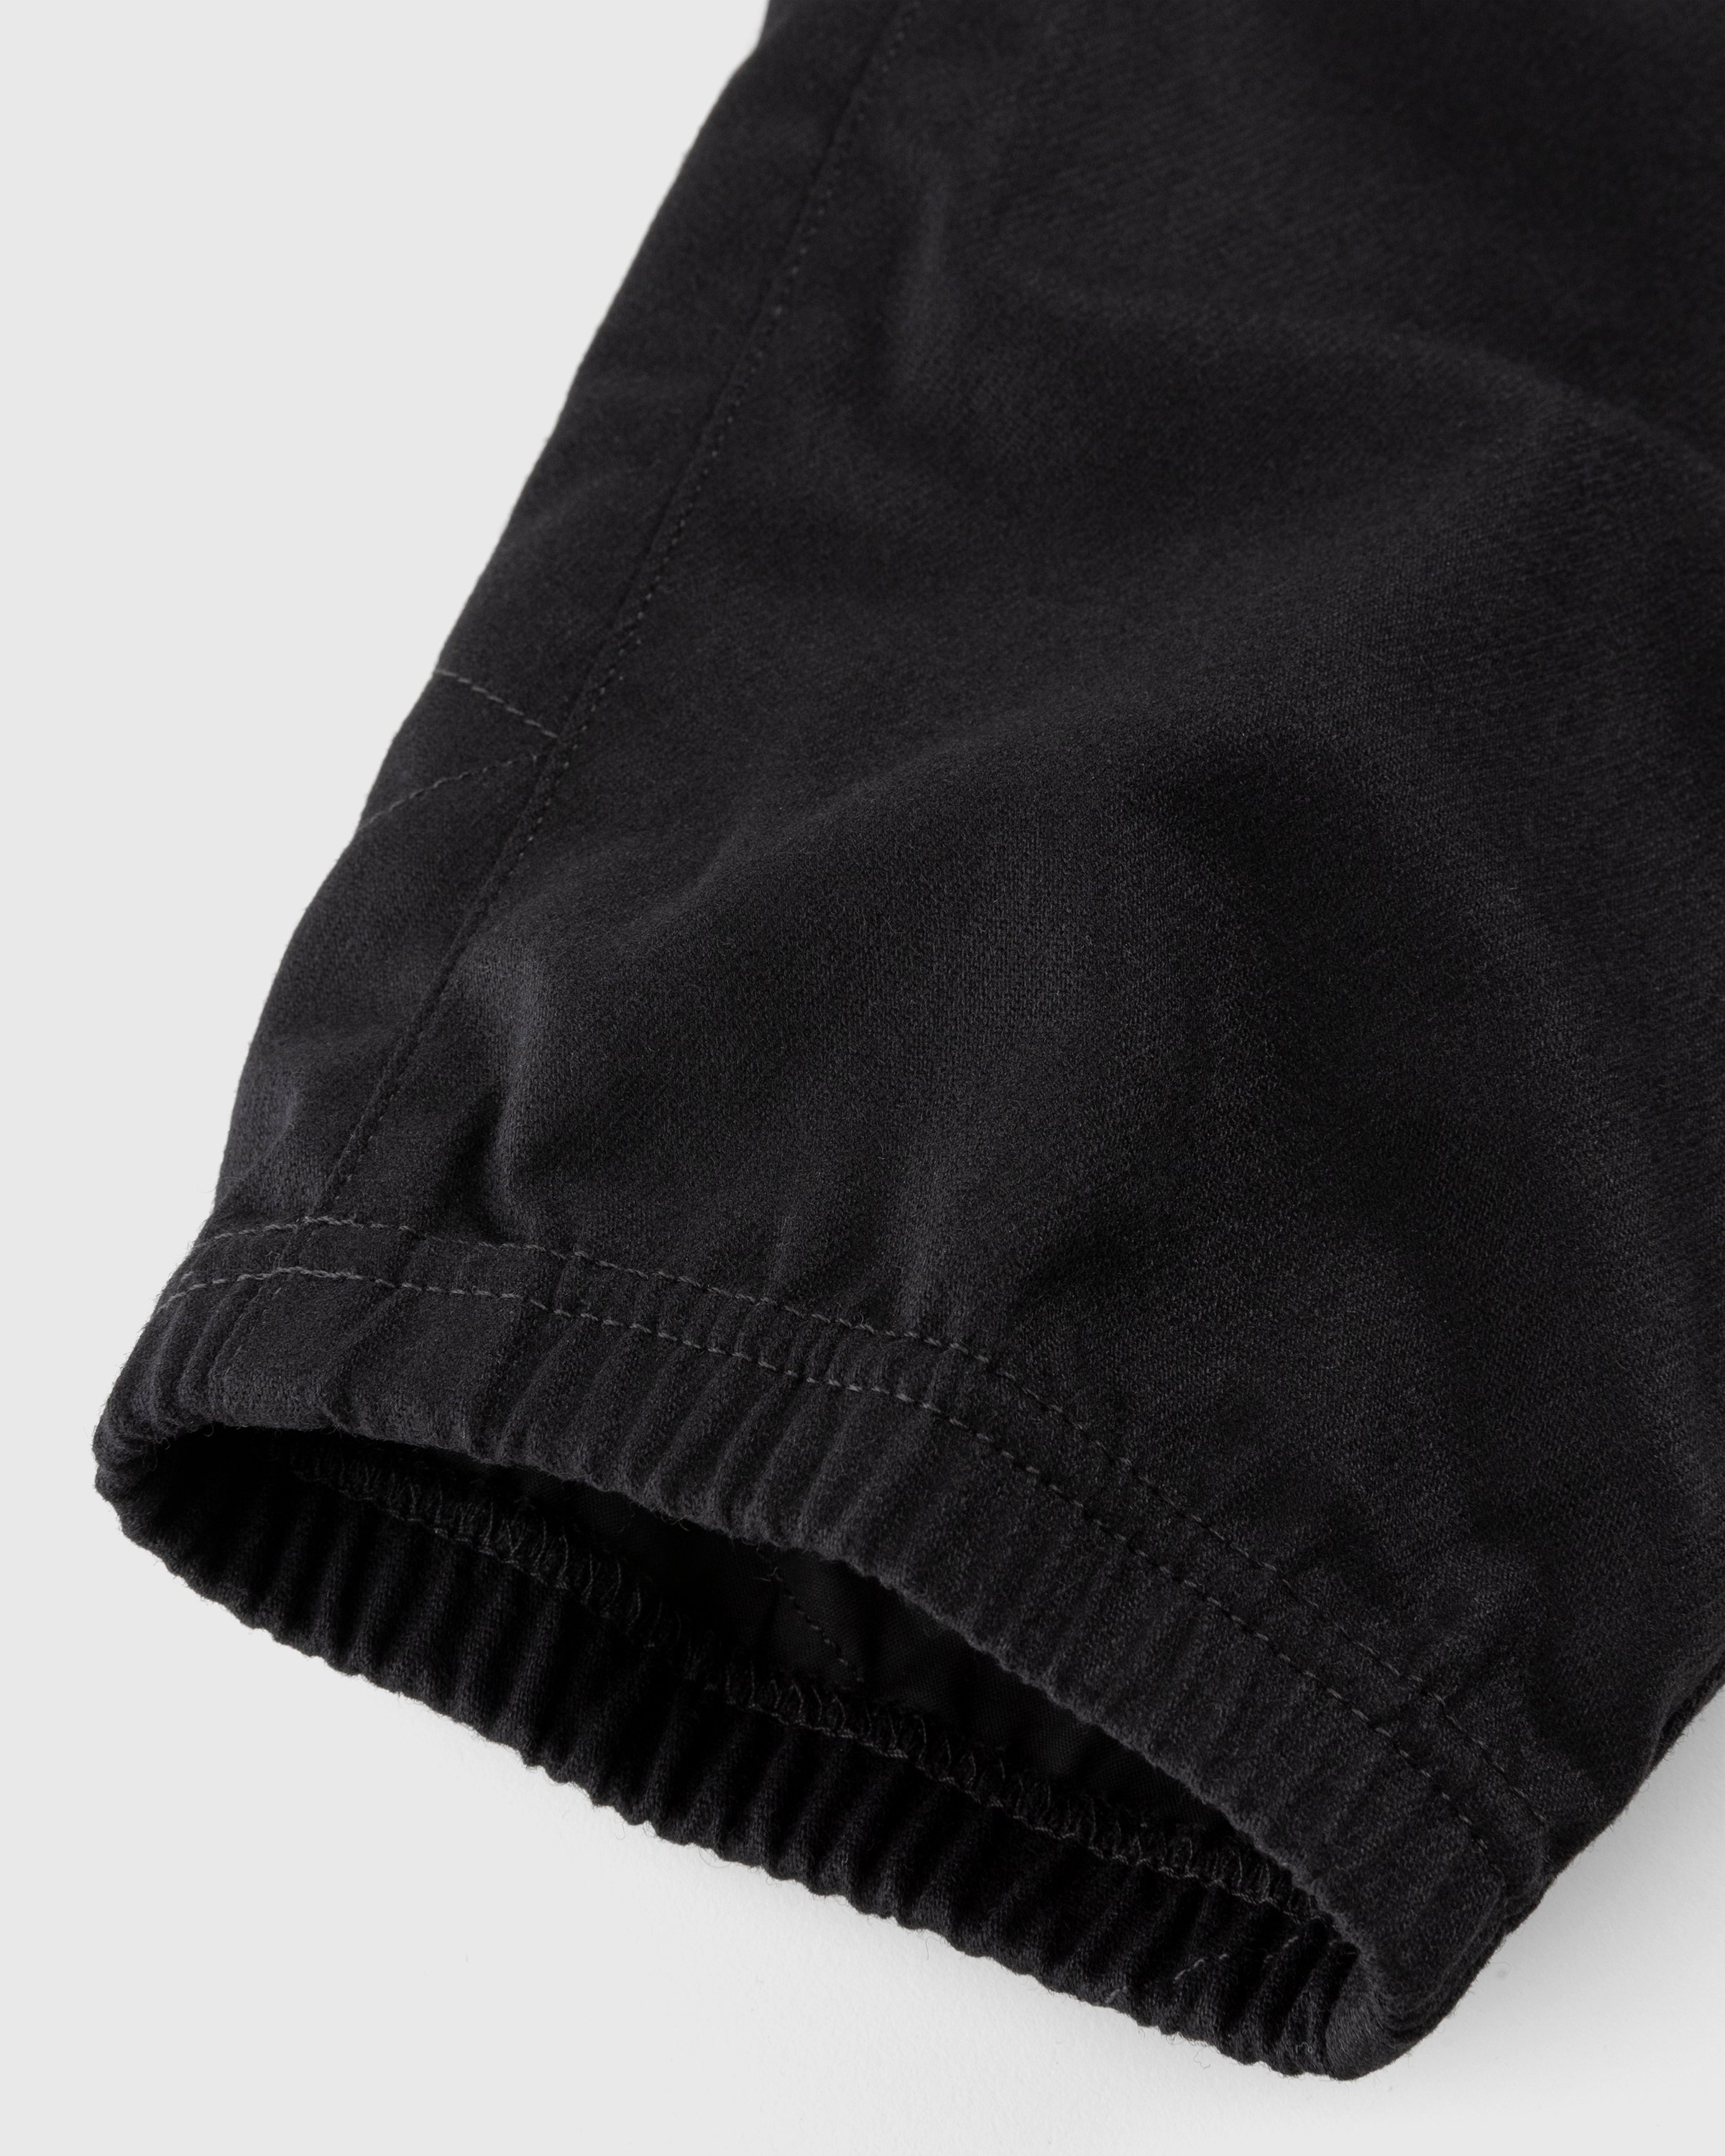 Stone Island - Wool-Nylon Cargo Pants Black - Clothing - Black - Image 5